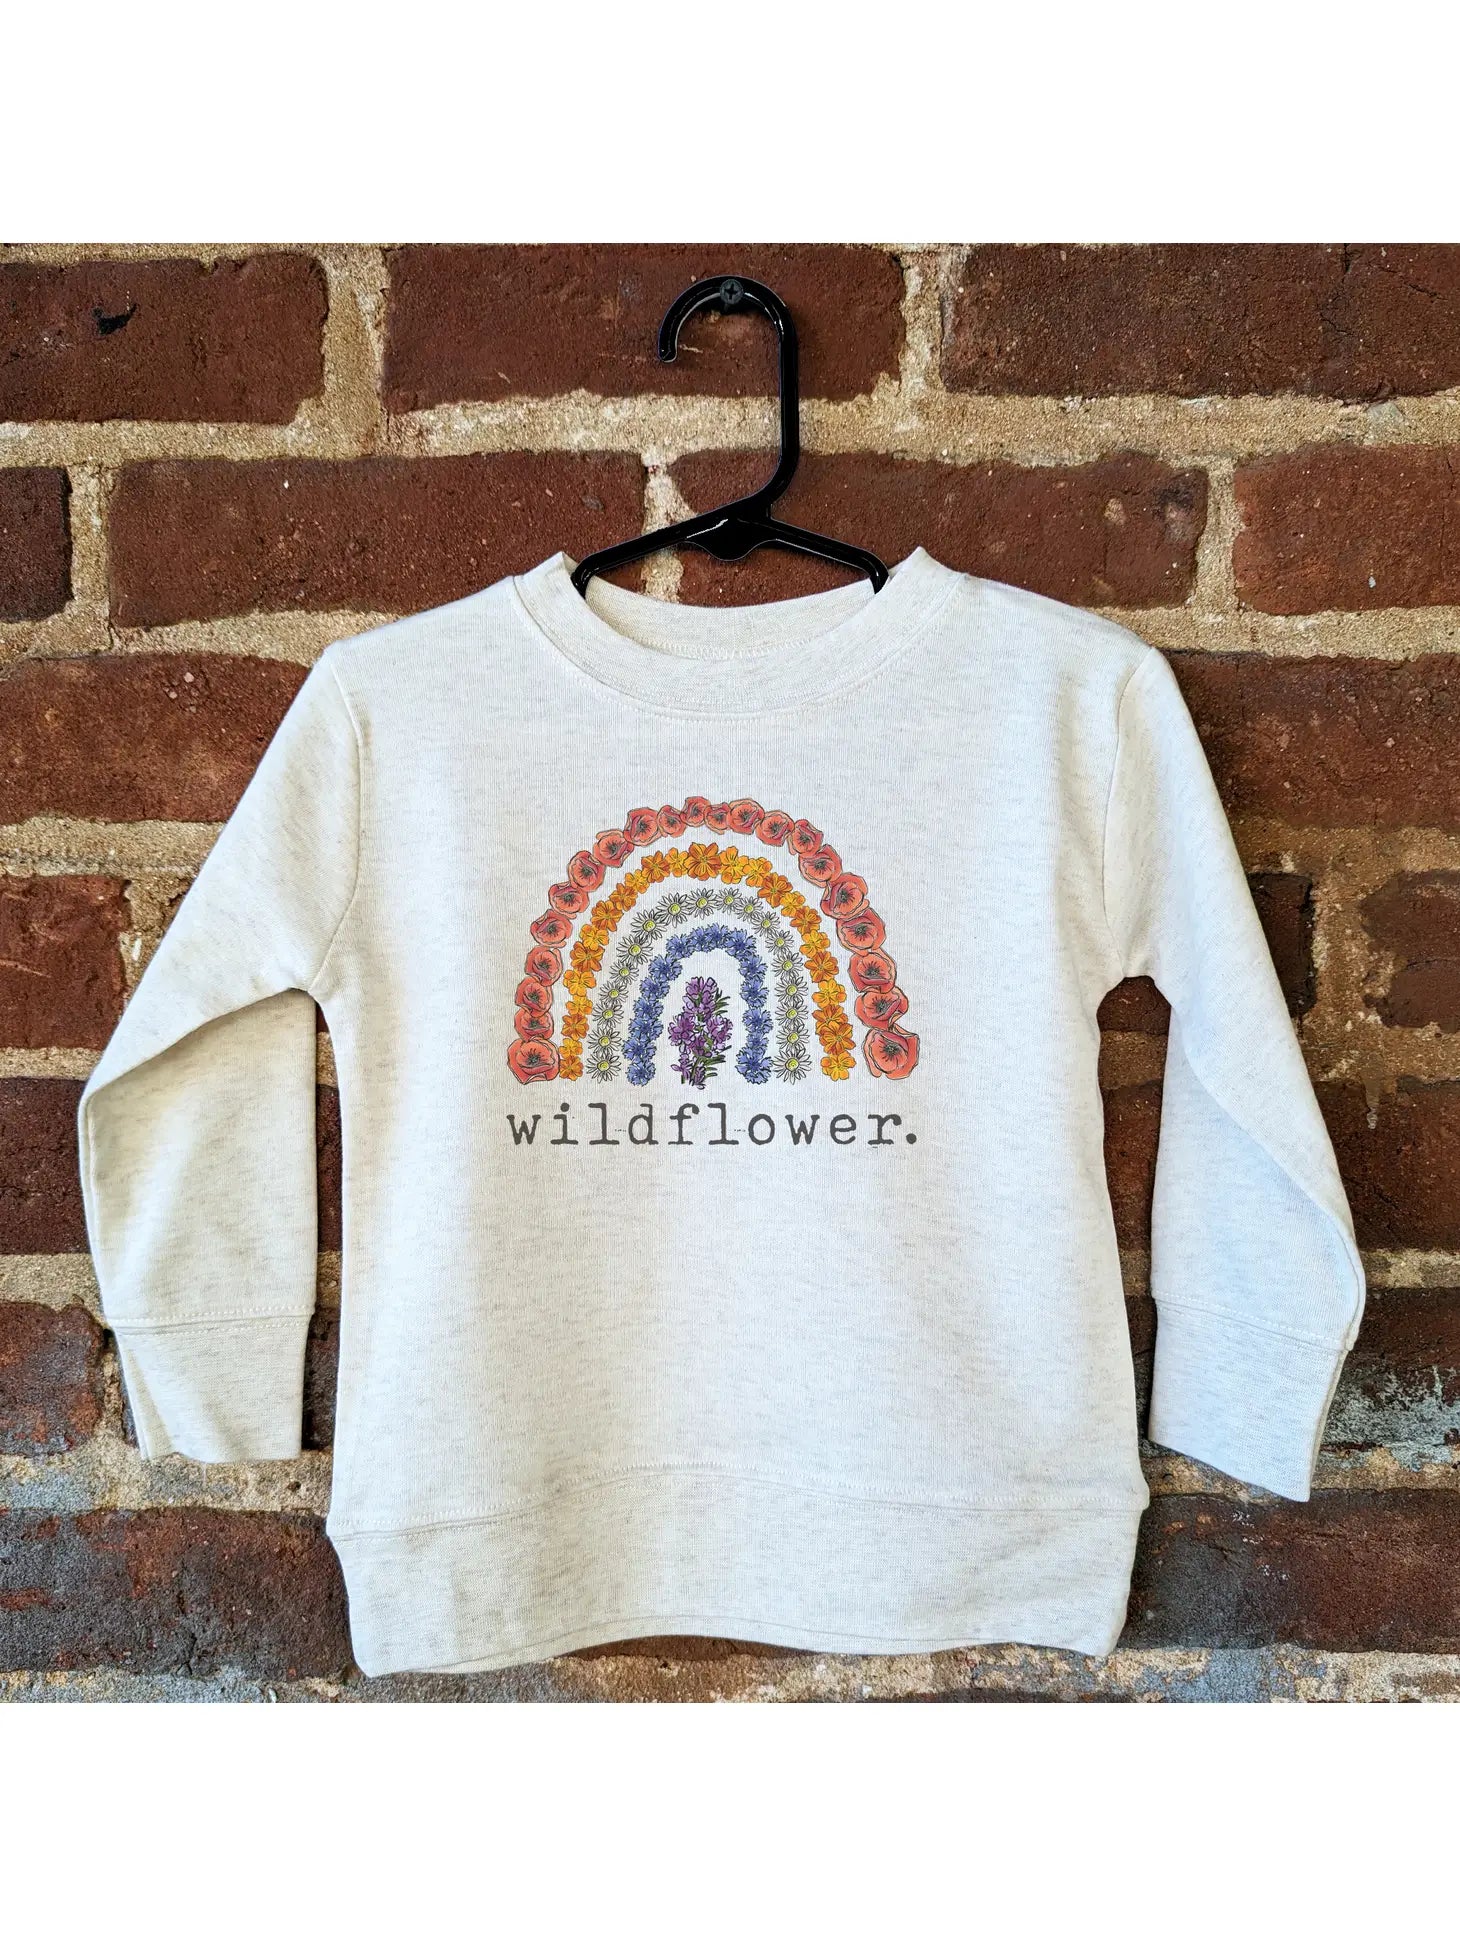 Wildflower Long Sleeve Top